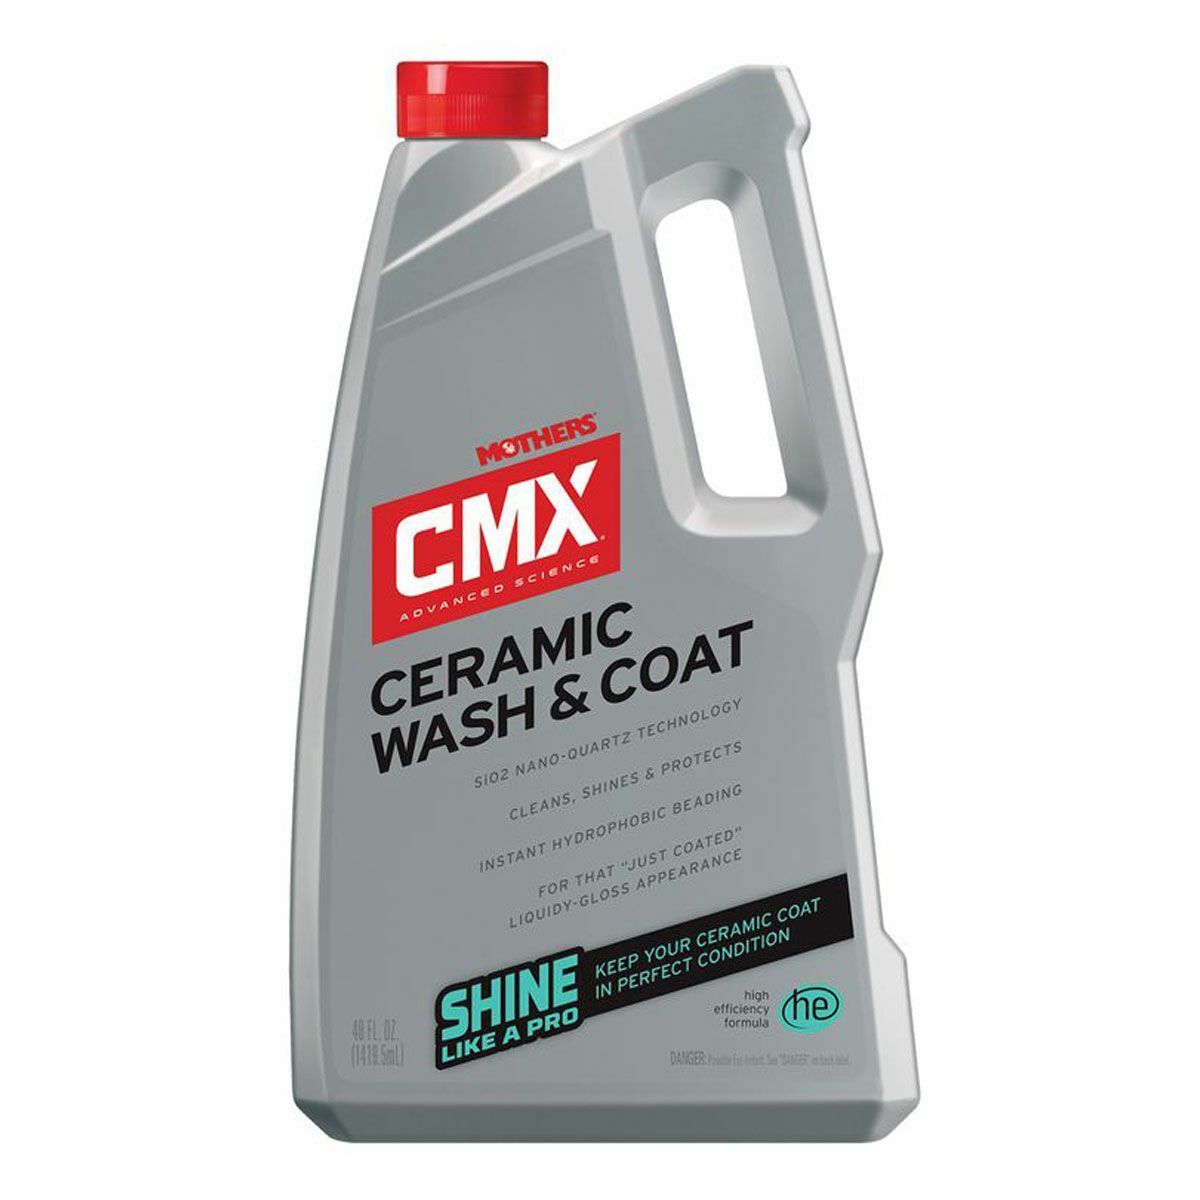 Mothers CMX Ceramic Wash & Coat 01548